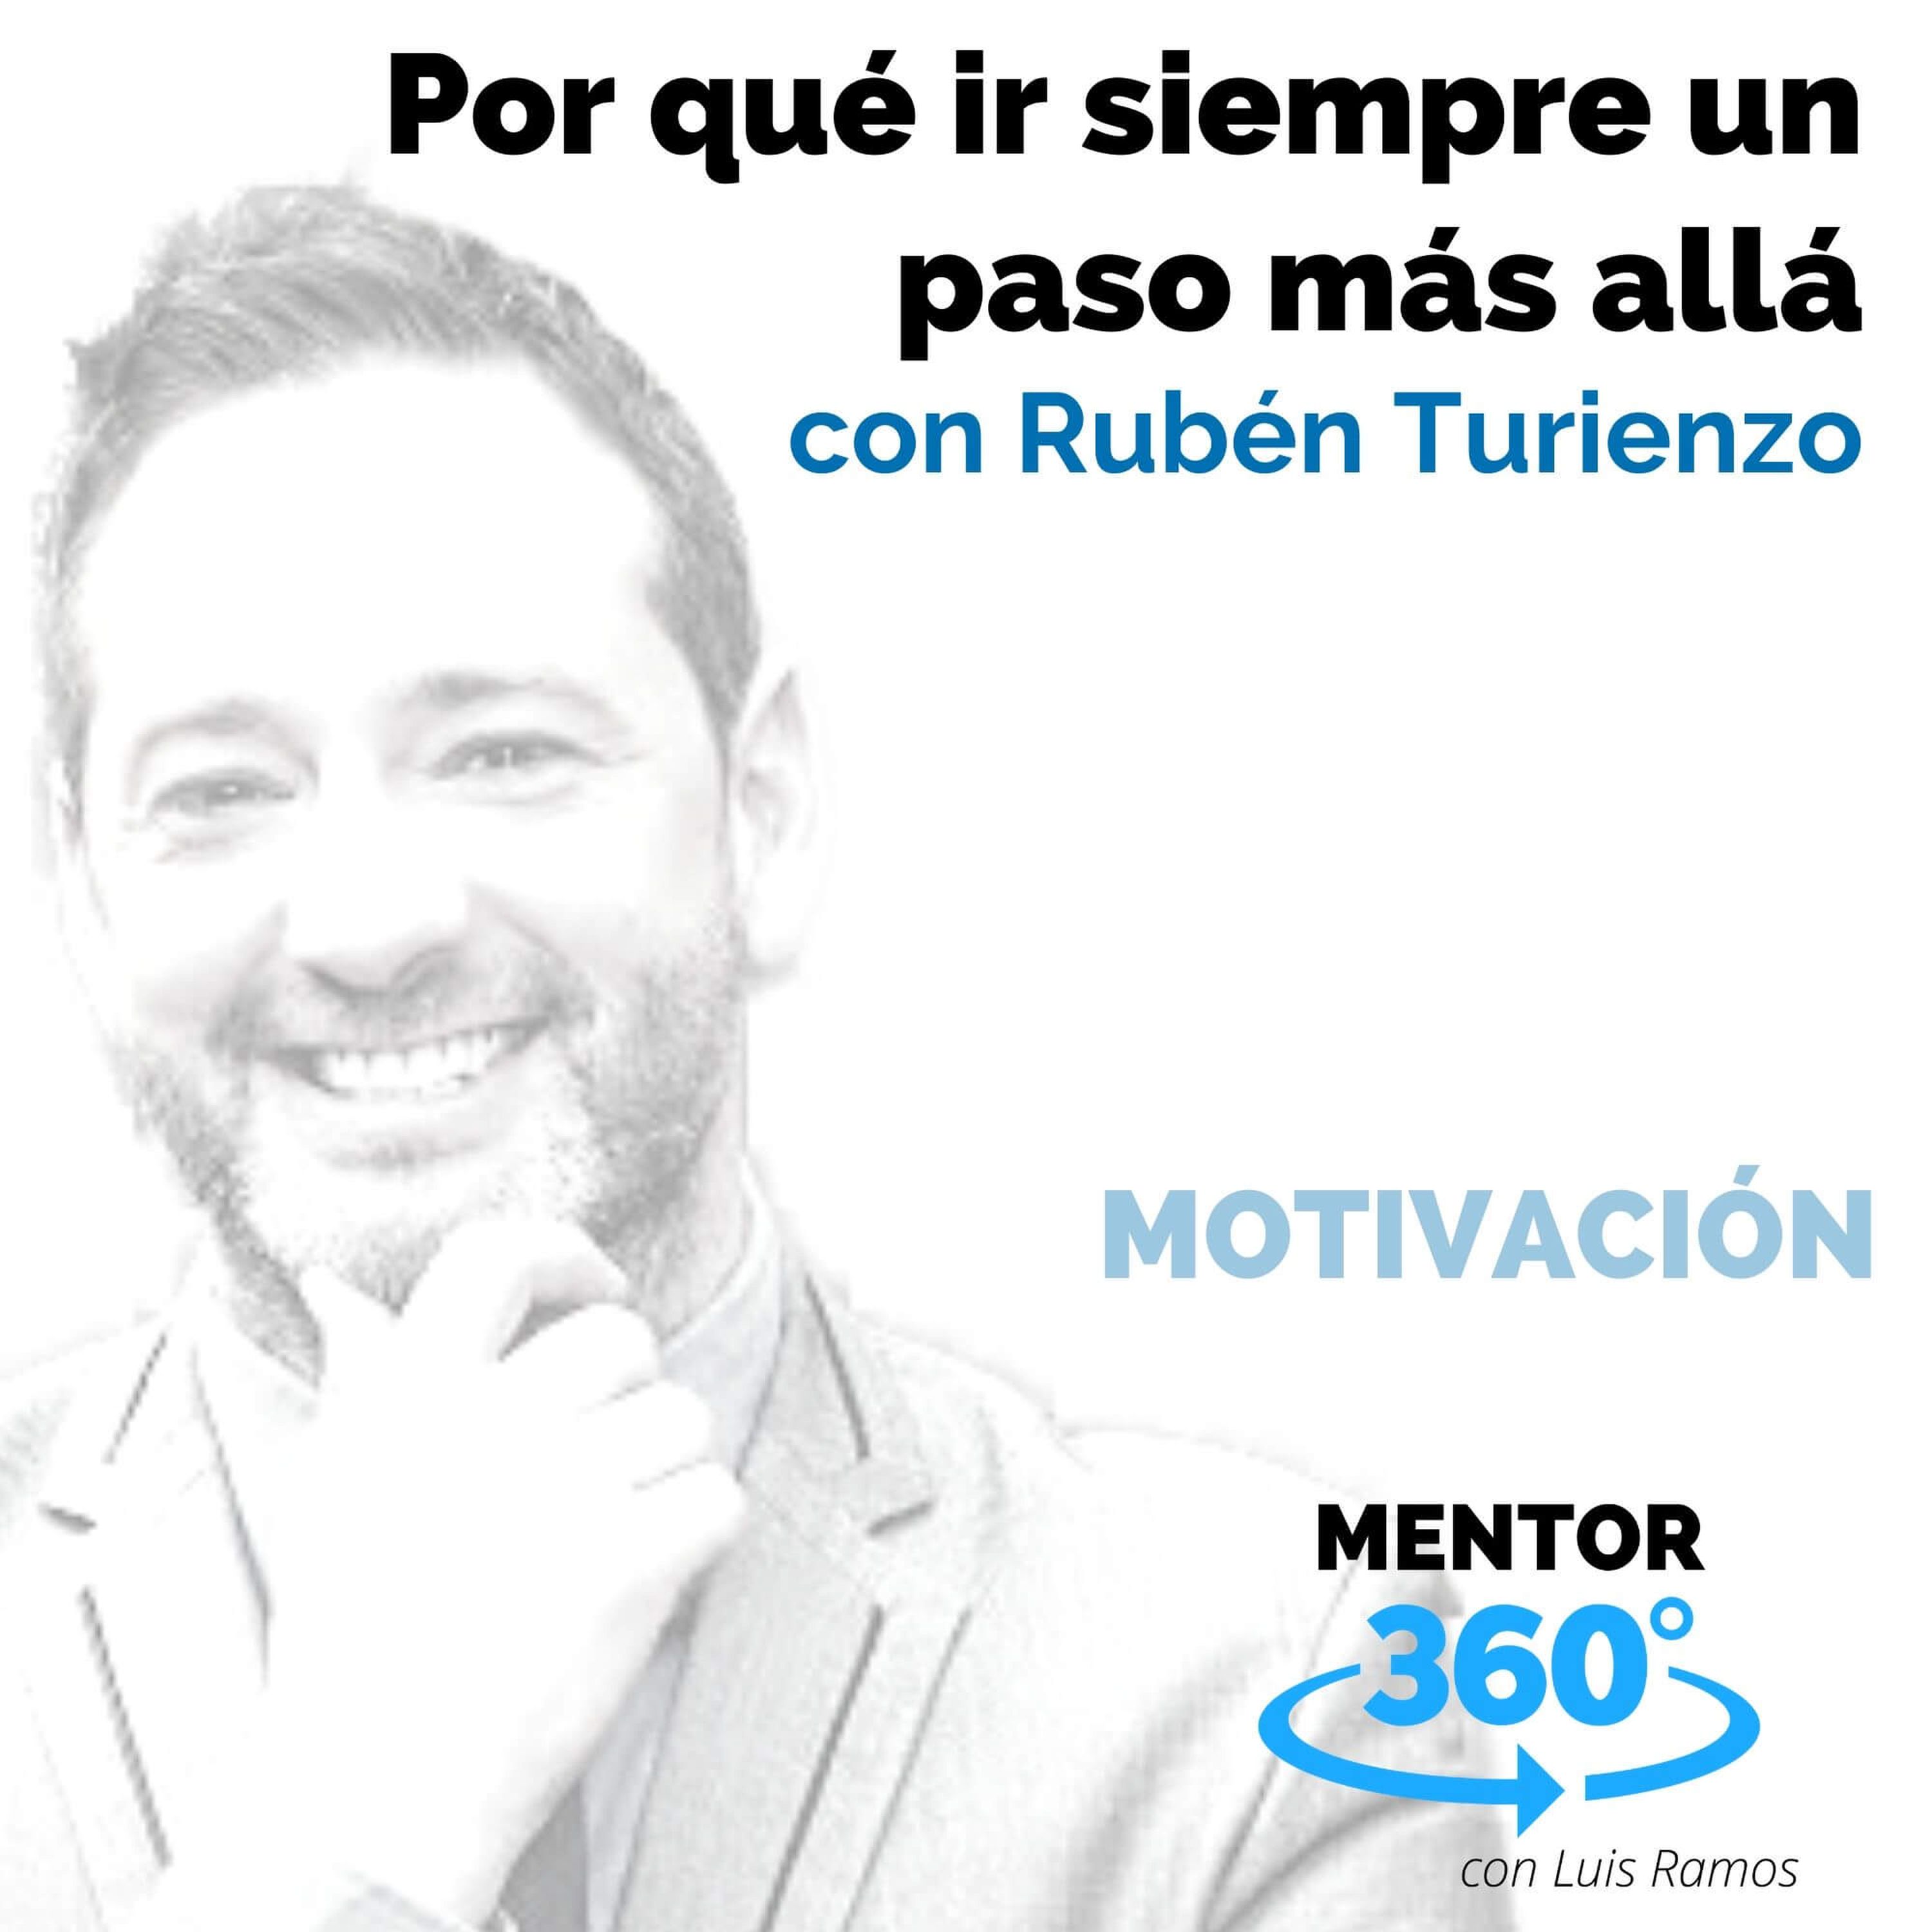 Por qué ir siempre un paso más allá, con Rubén Turienzo - MOTIVACIÓN